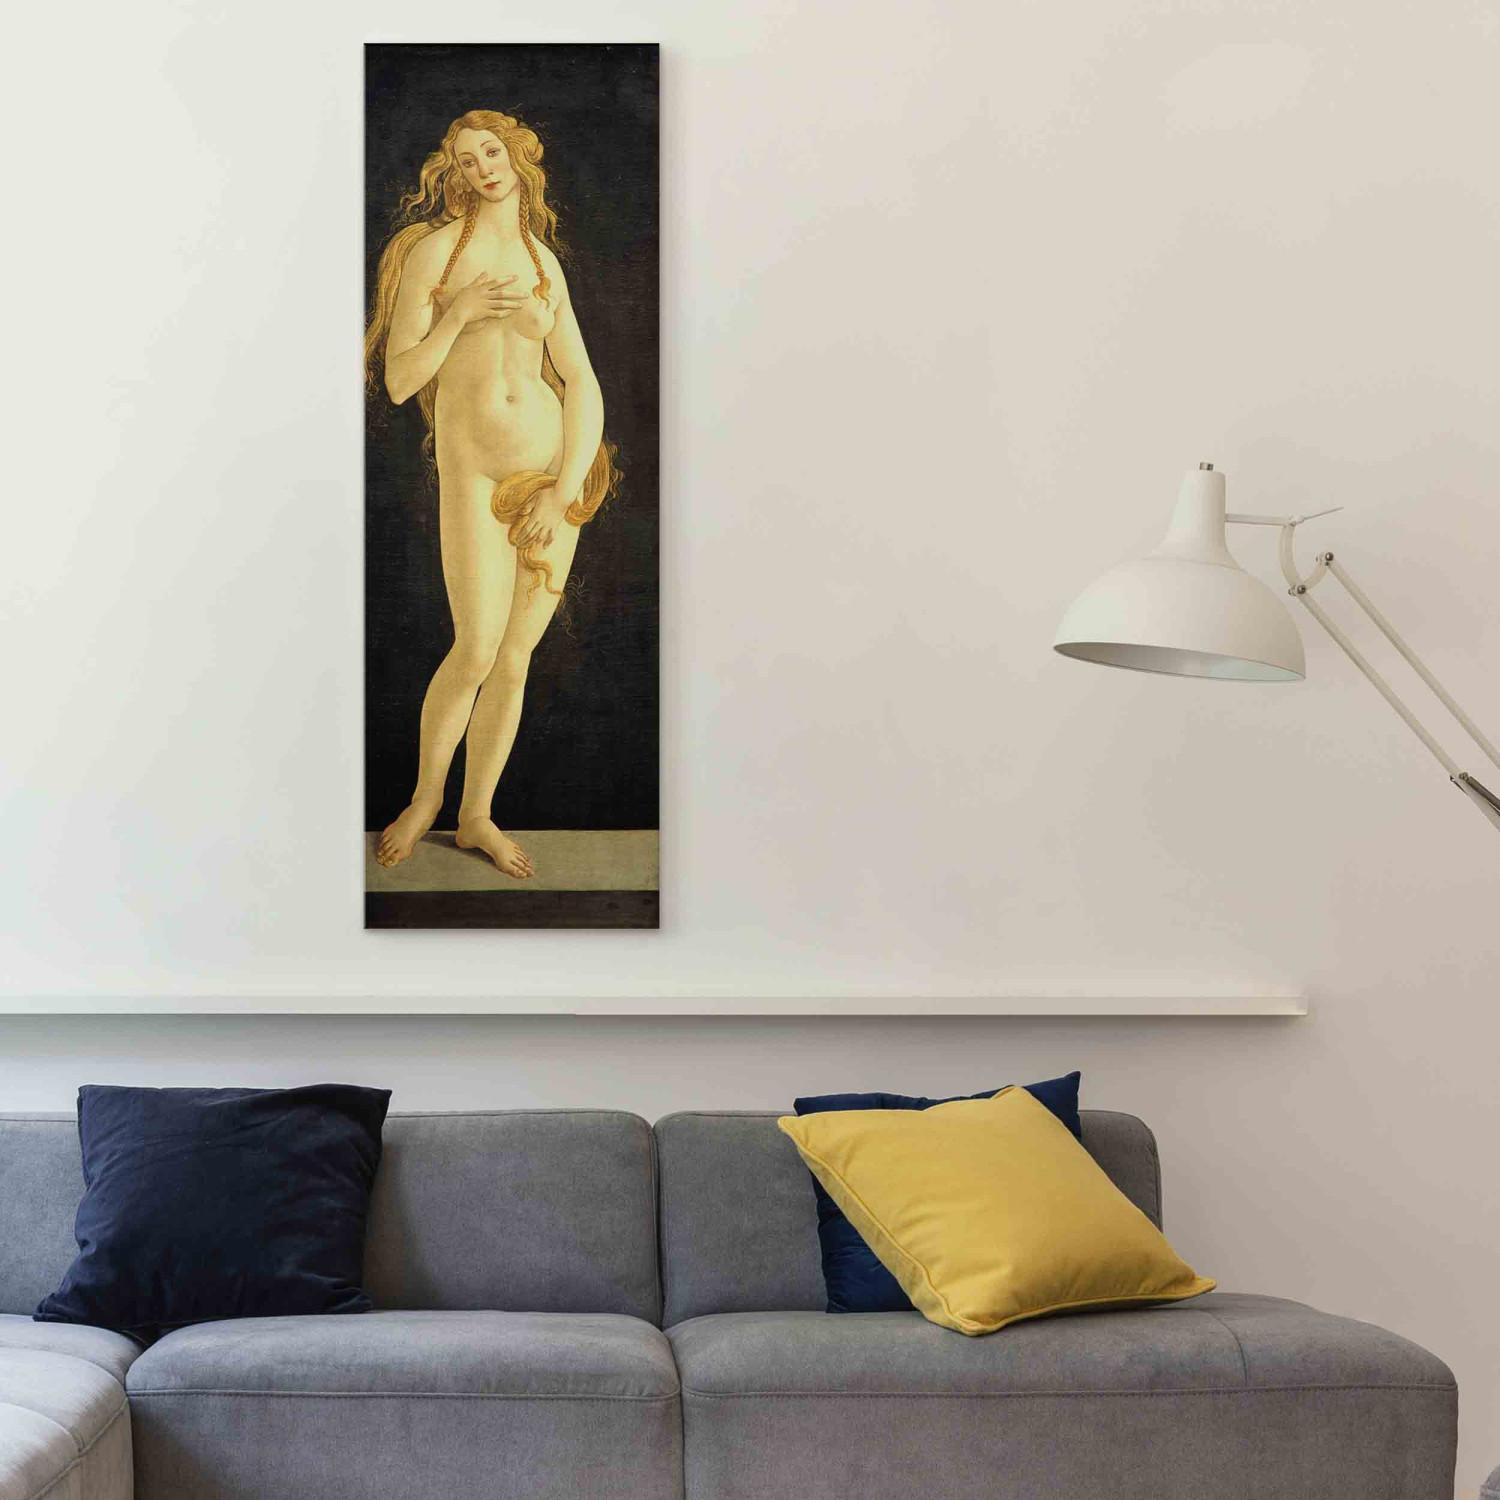 Réplica de pintura The Birth of Venus